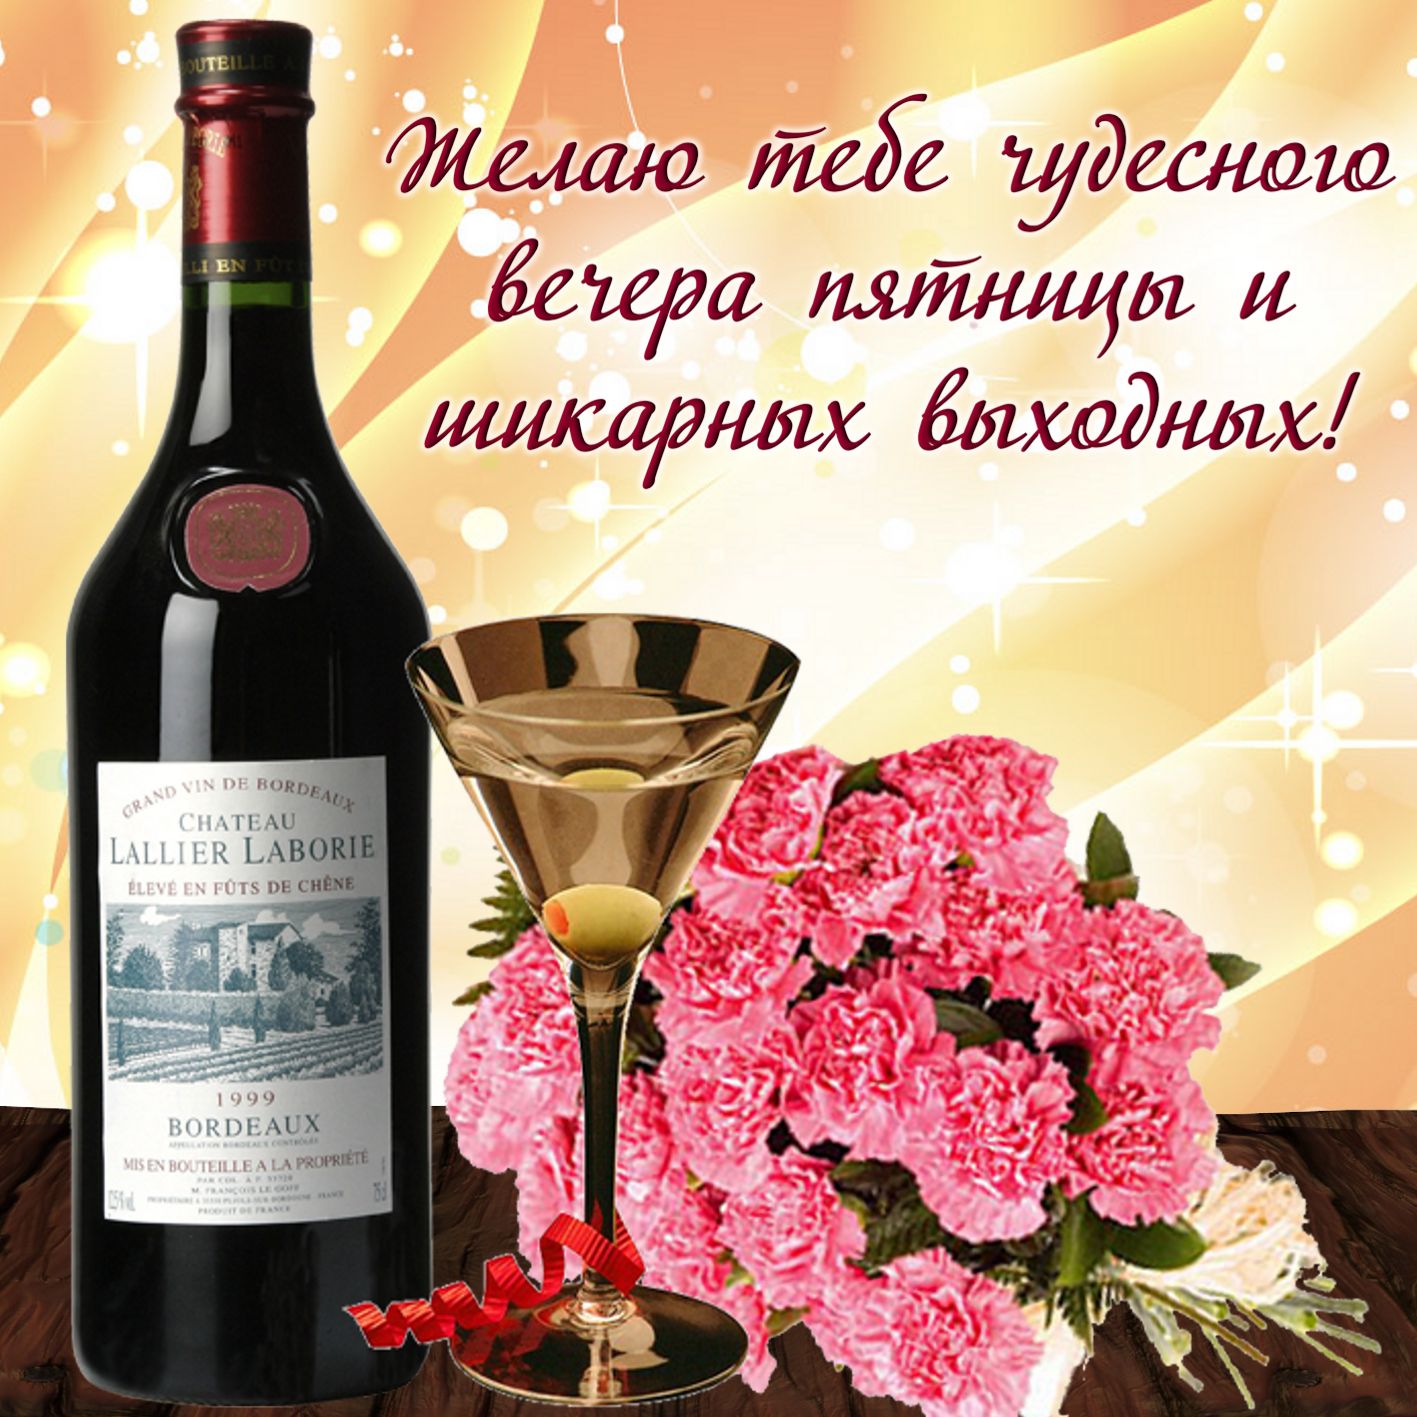 Поздравления День Рождения Женщине С Вином